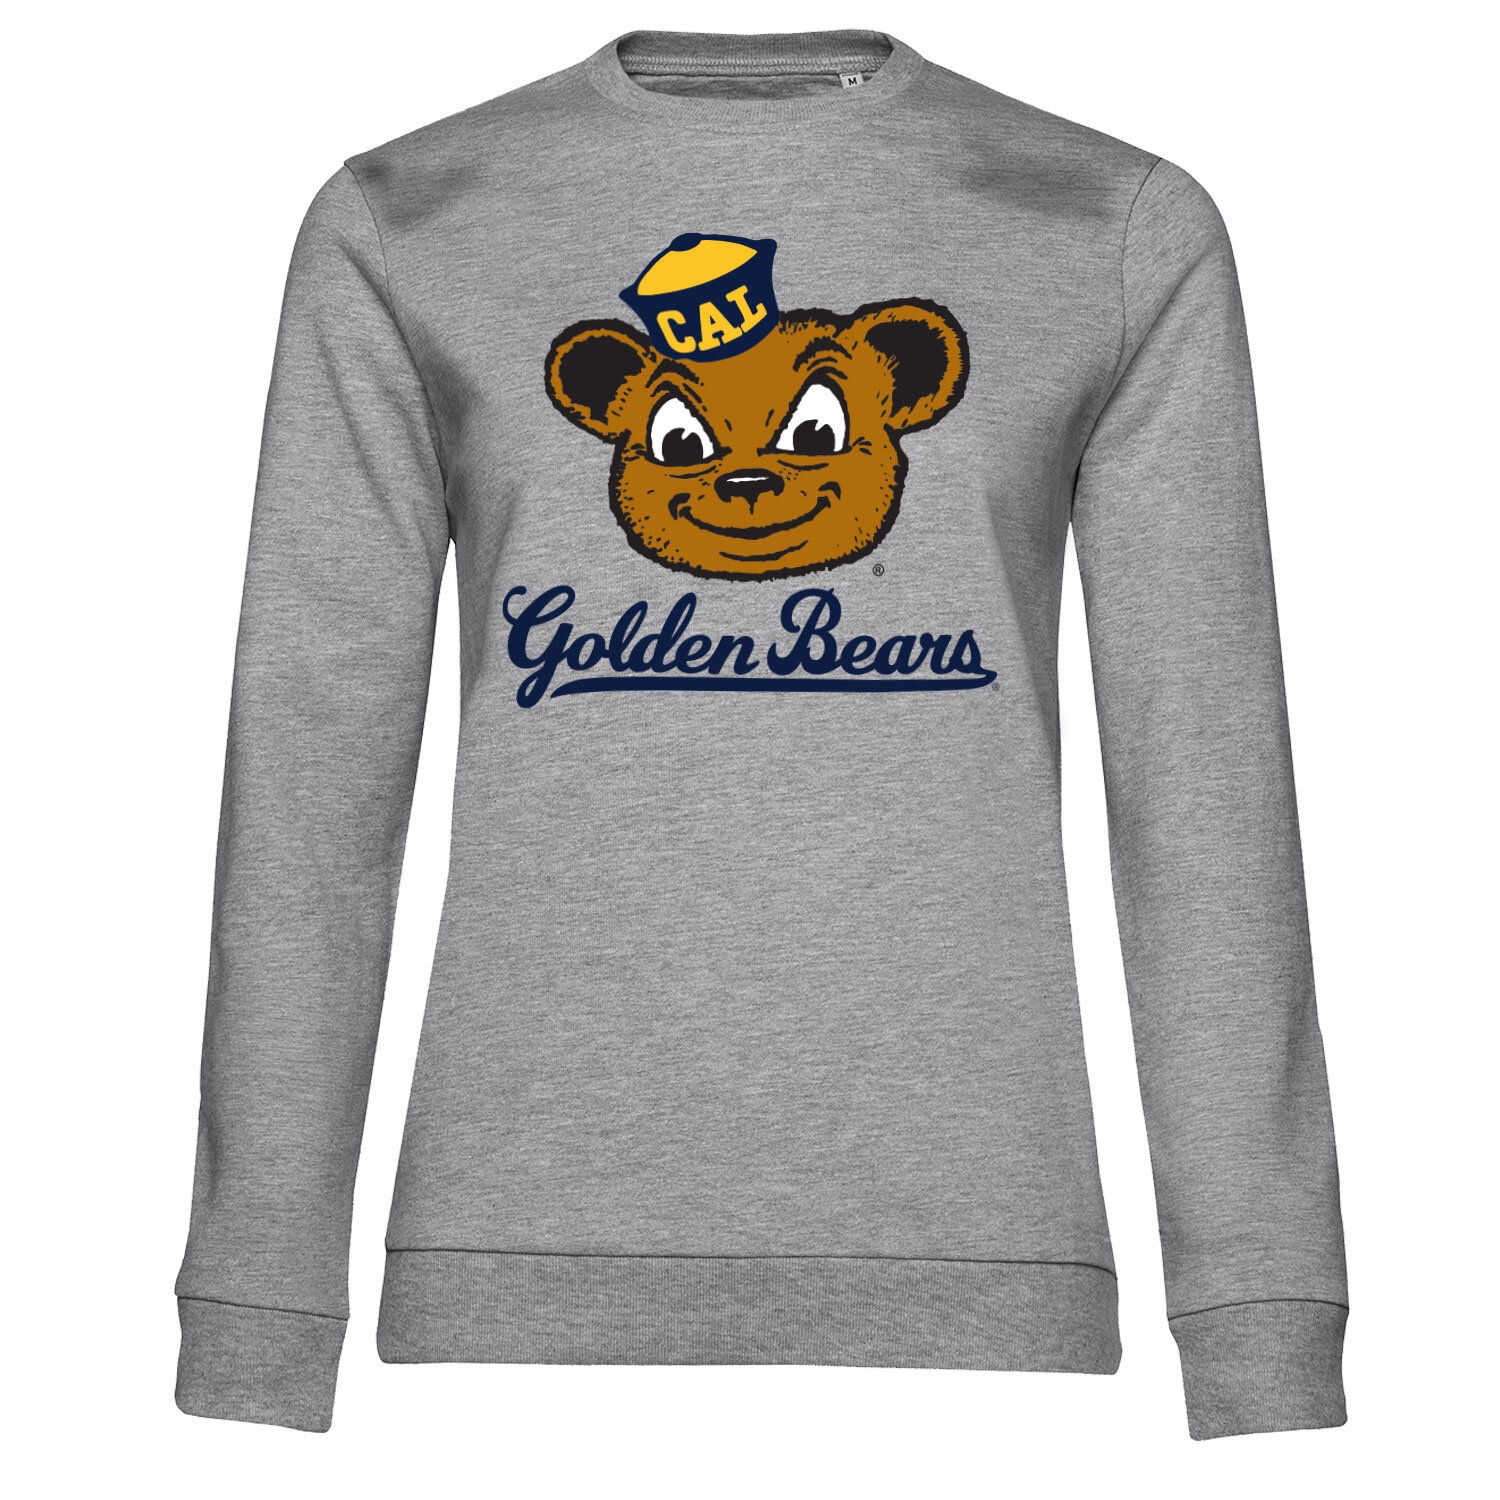 Golden Bears Mascot Girly Sweatshirt